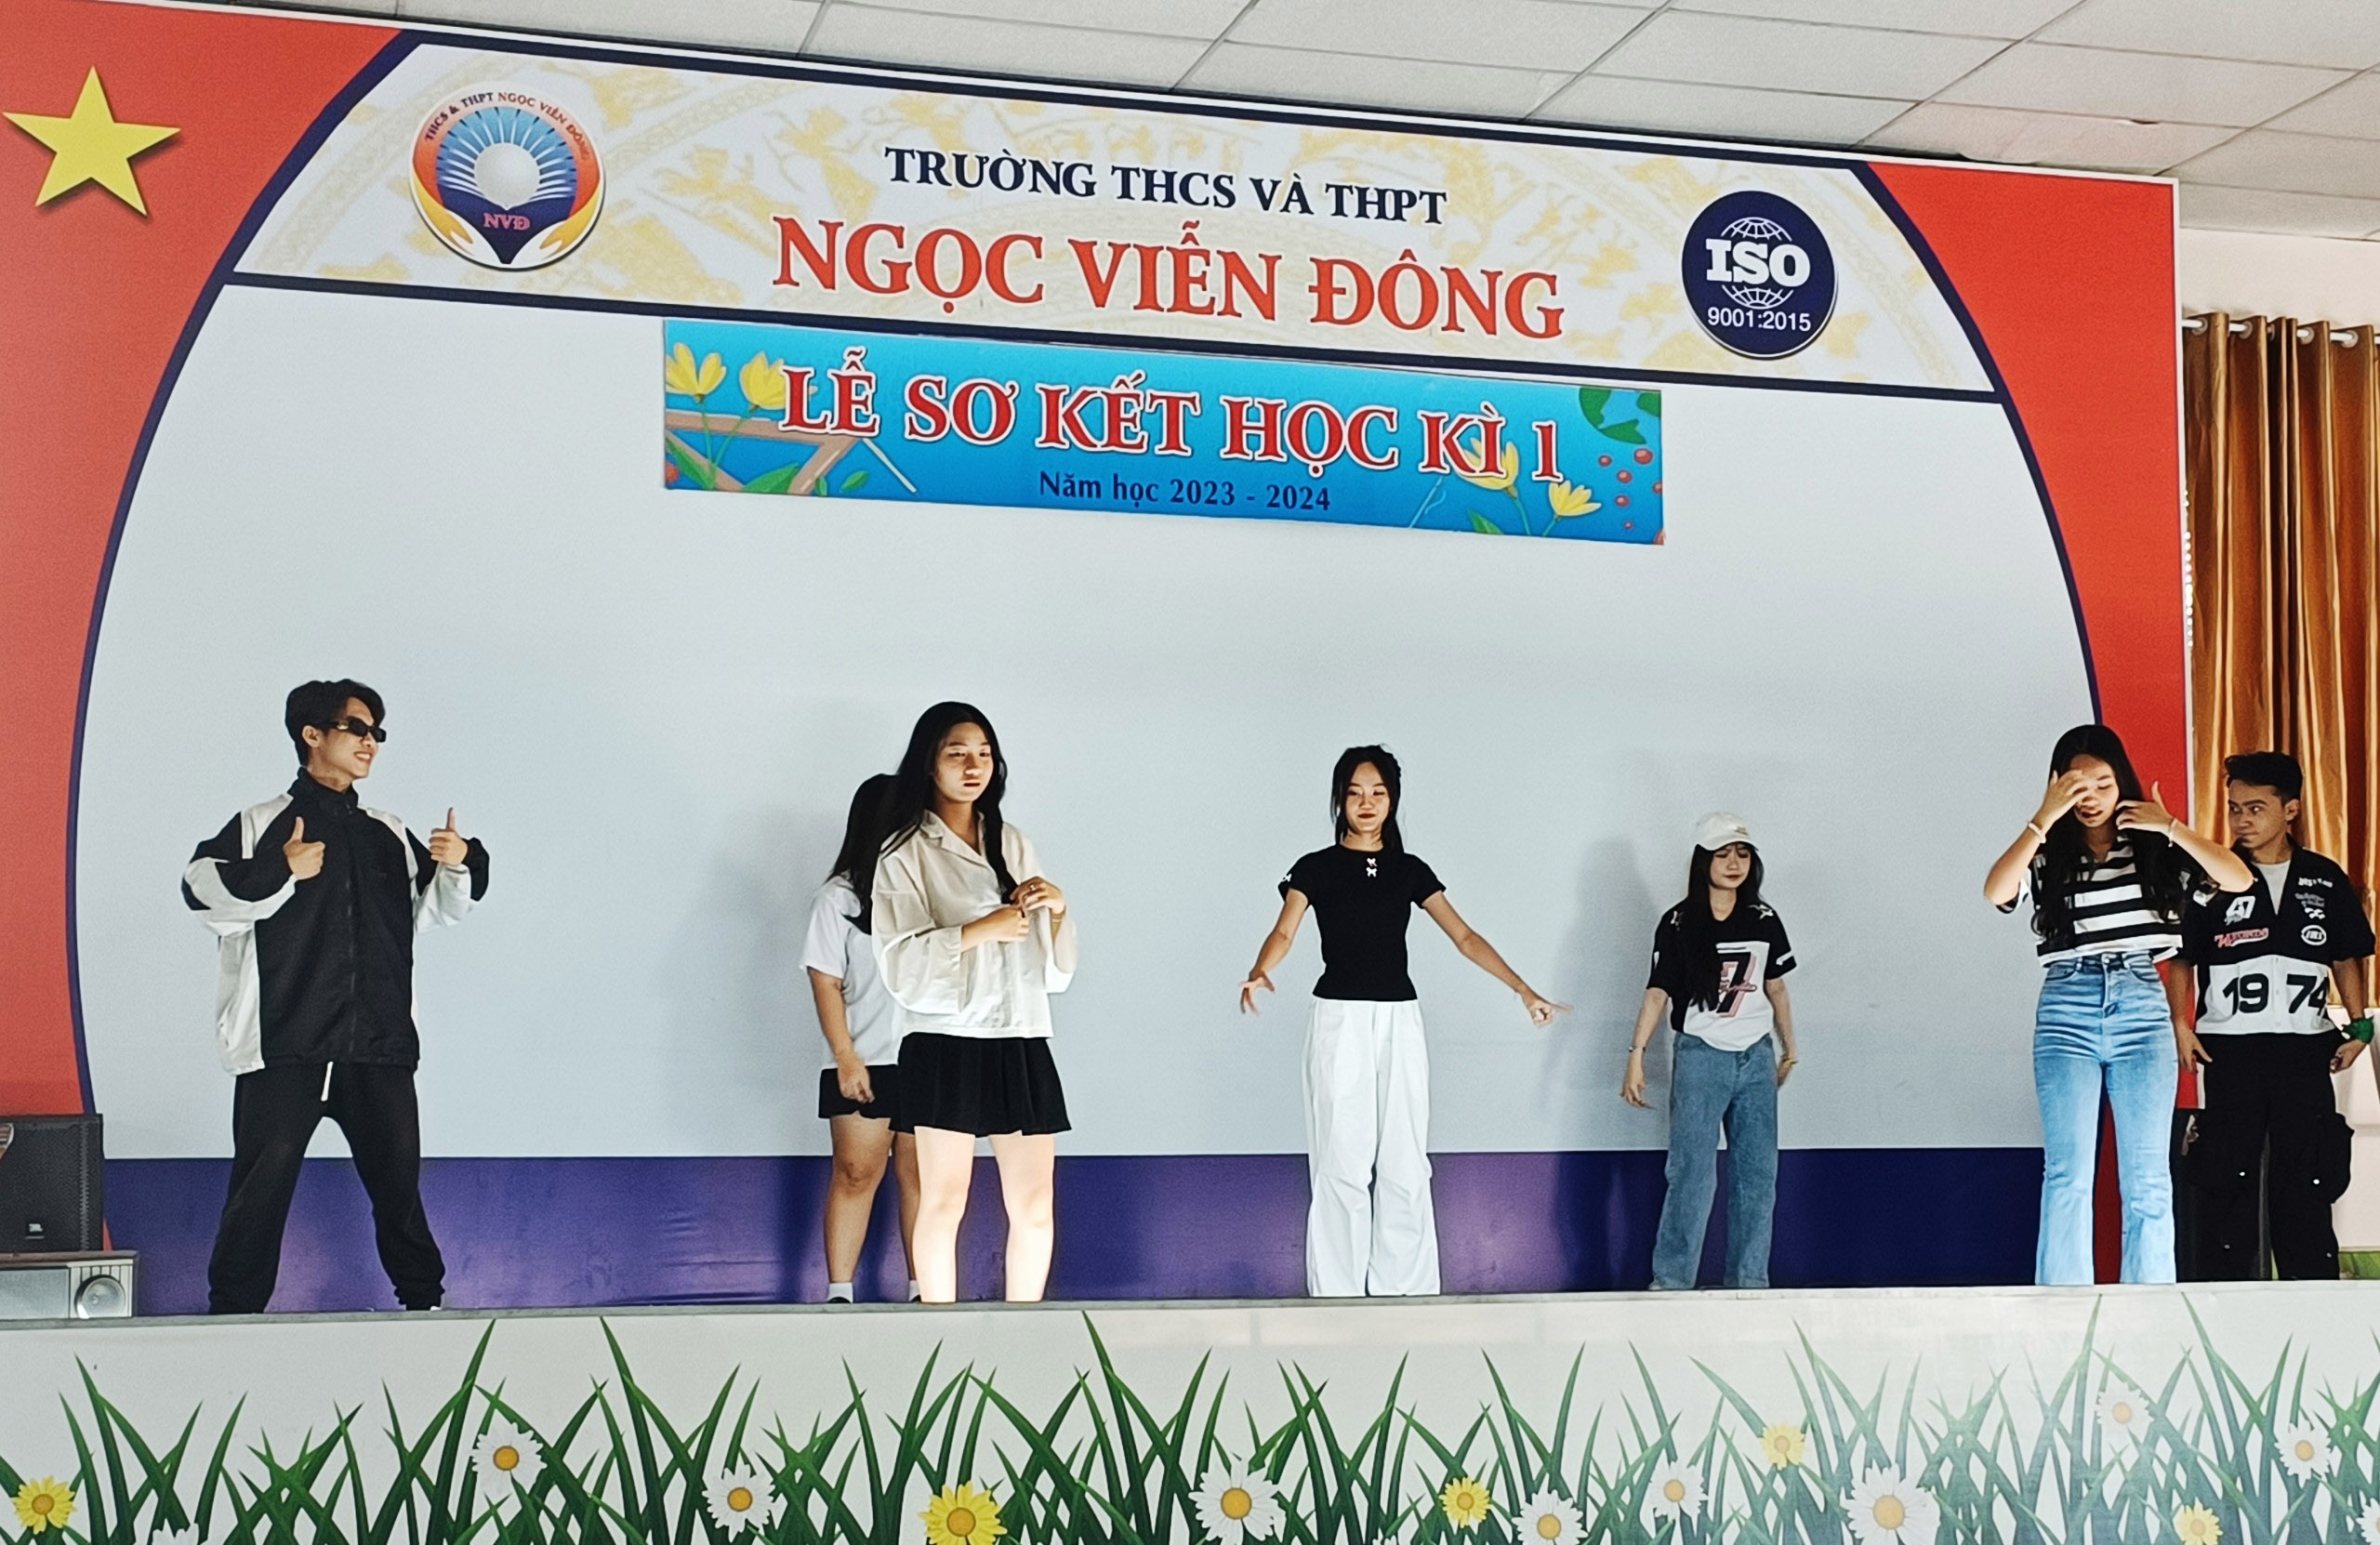 Mashup Bo Xì Bo - Anh Là Ngoại Lệ Của Em - Tò Te Tí dance cover by đội văn nghệ trường THCS và THPT Ngọc Viễn ĐÔng